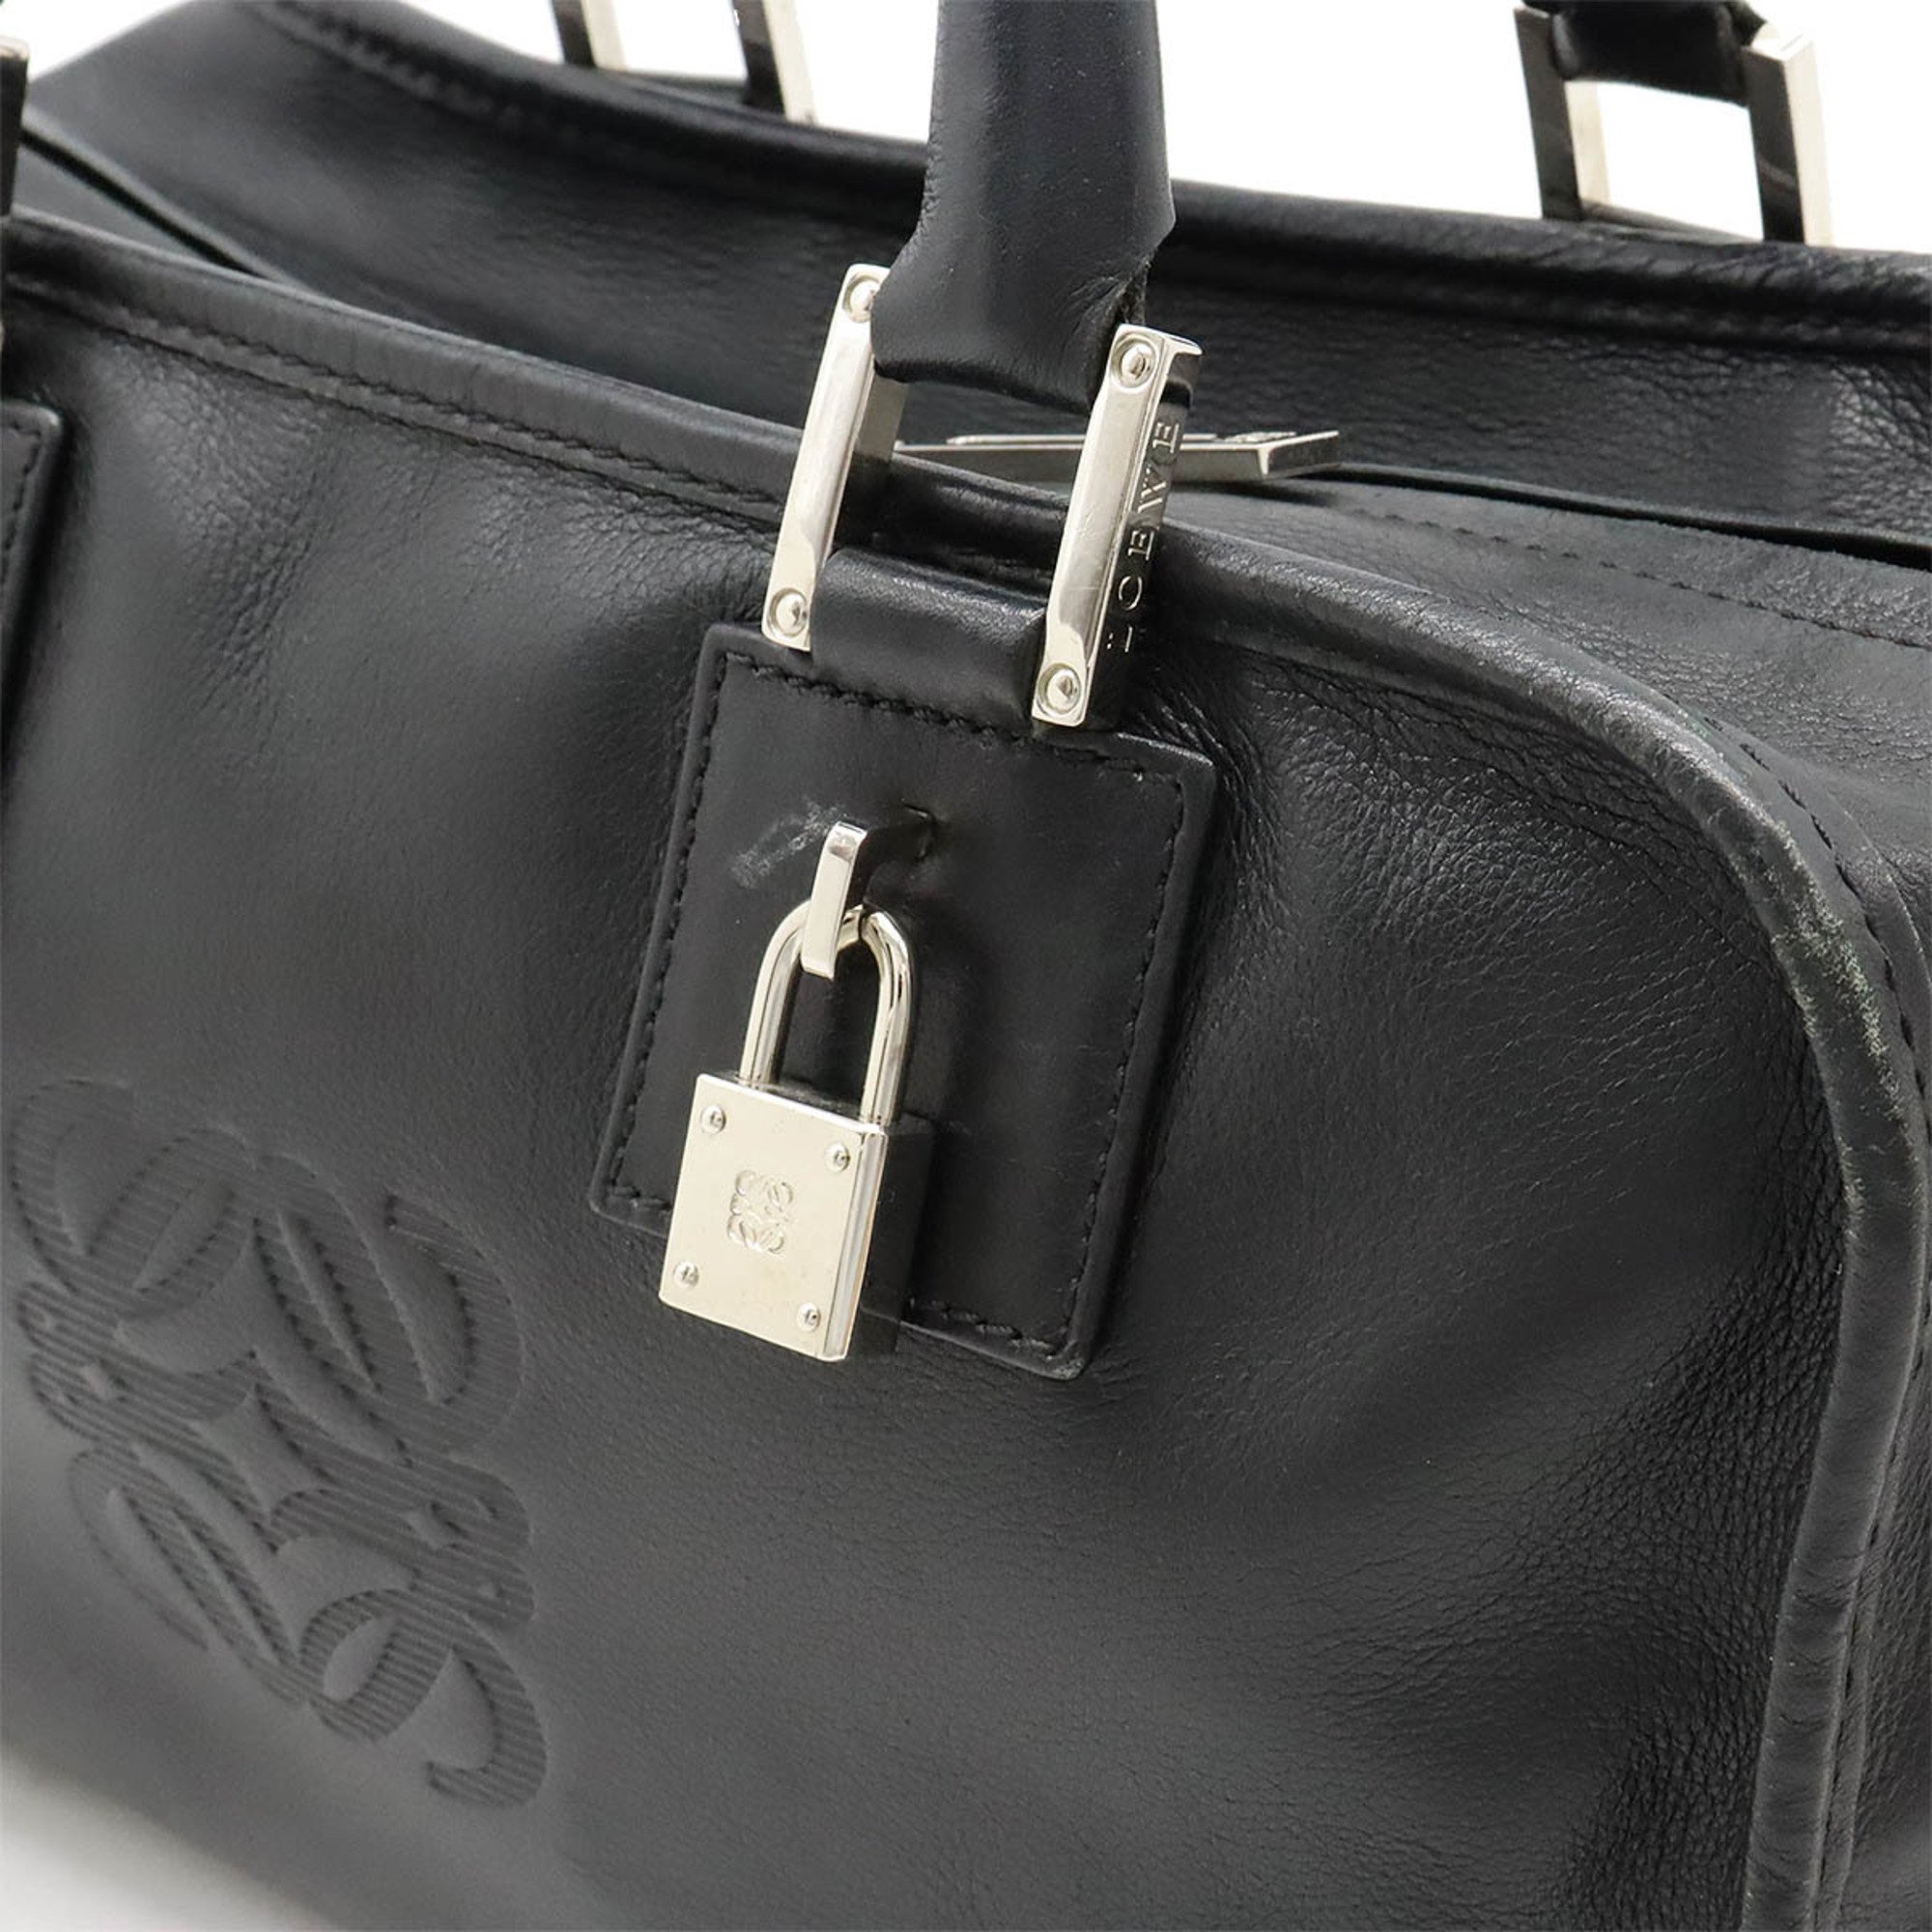 LOEWE Amazona 28 Anagram Handbag Boston Bag Leather Black